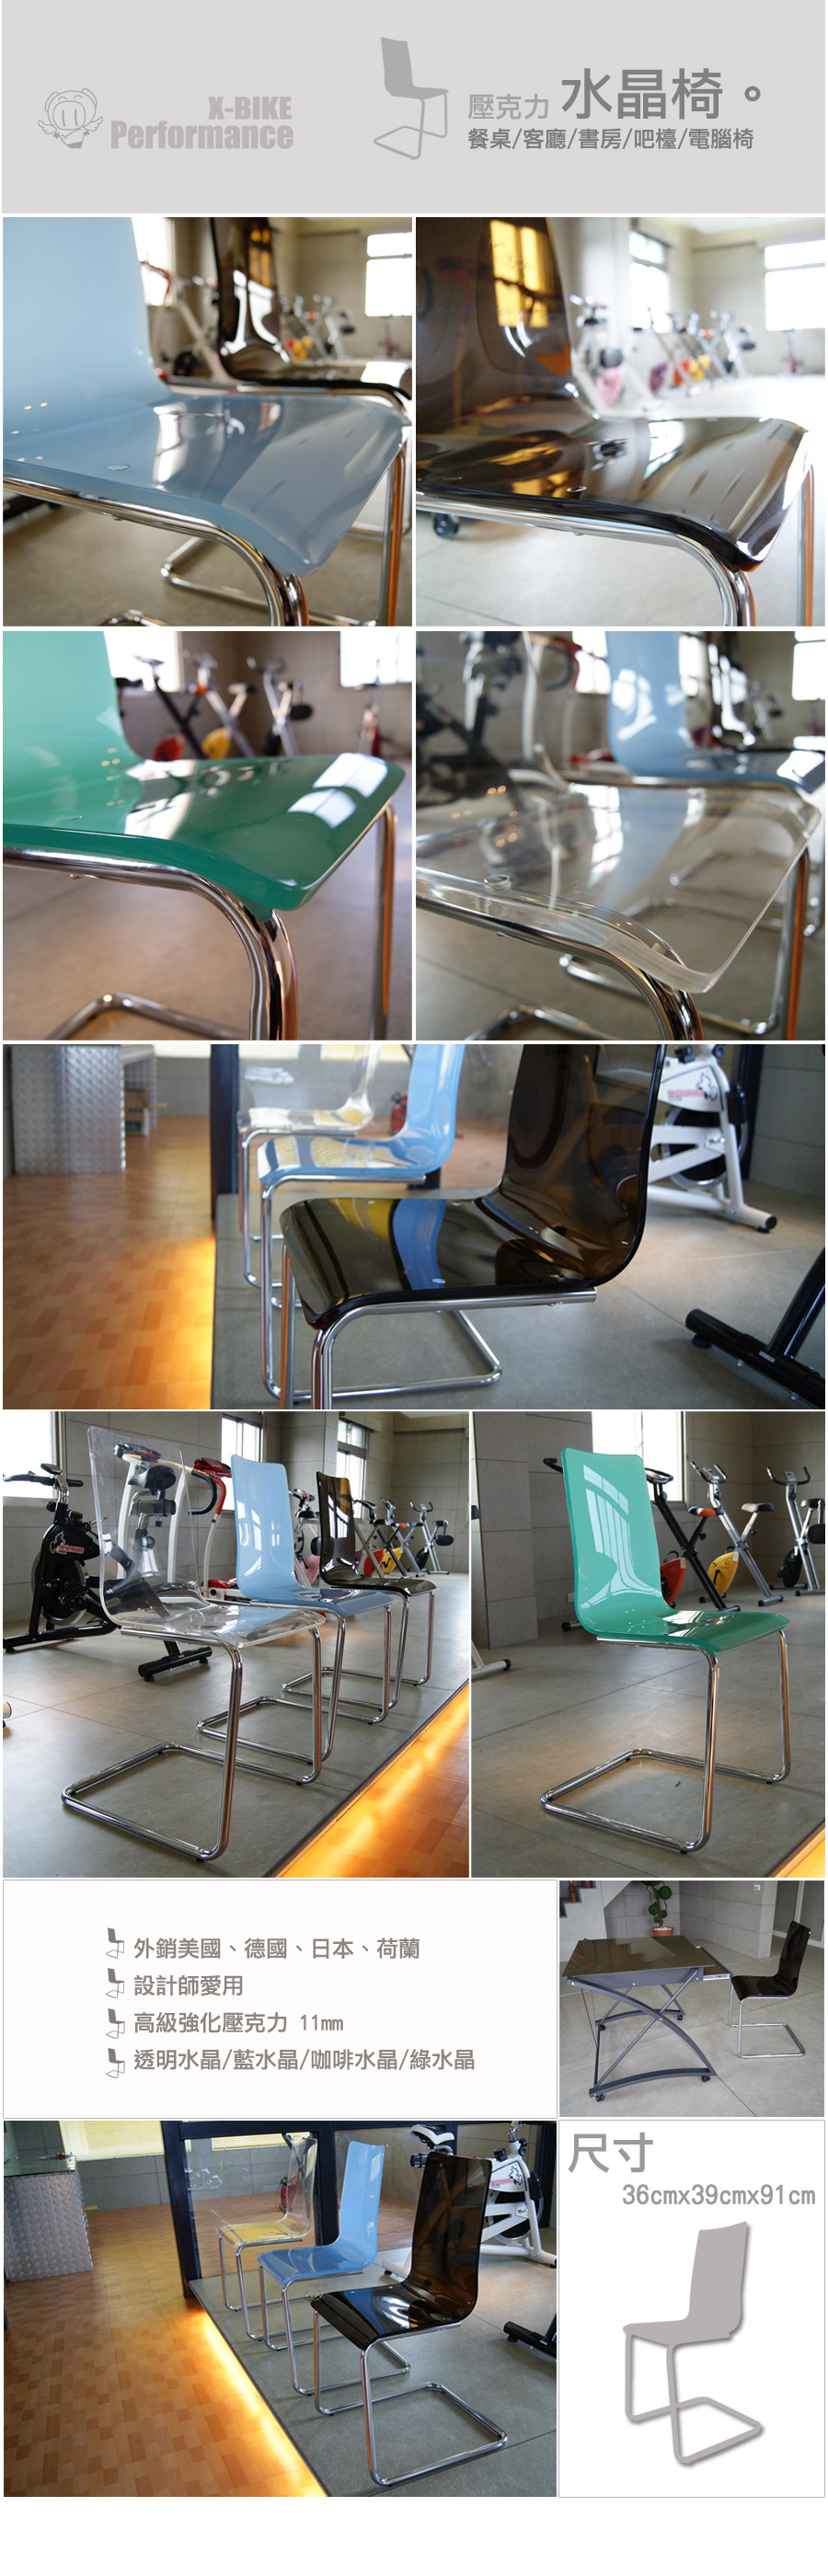 Acrylic-chair.jpg